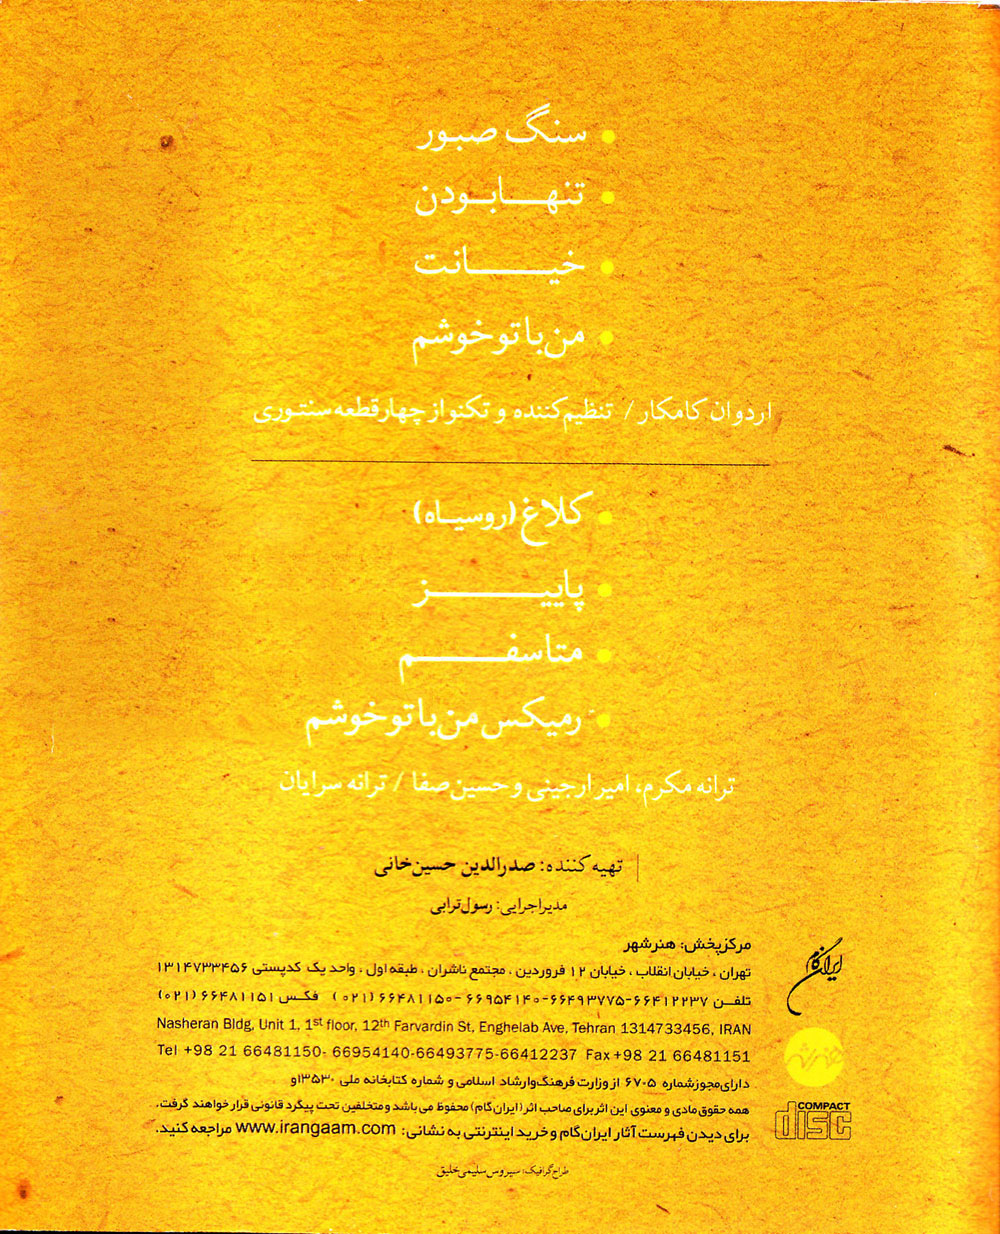 دانلود آلبوم جدید محسن چاوشی به نام سنتوری